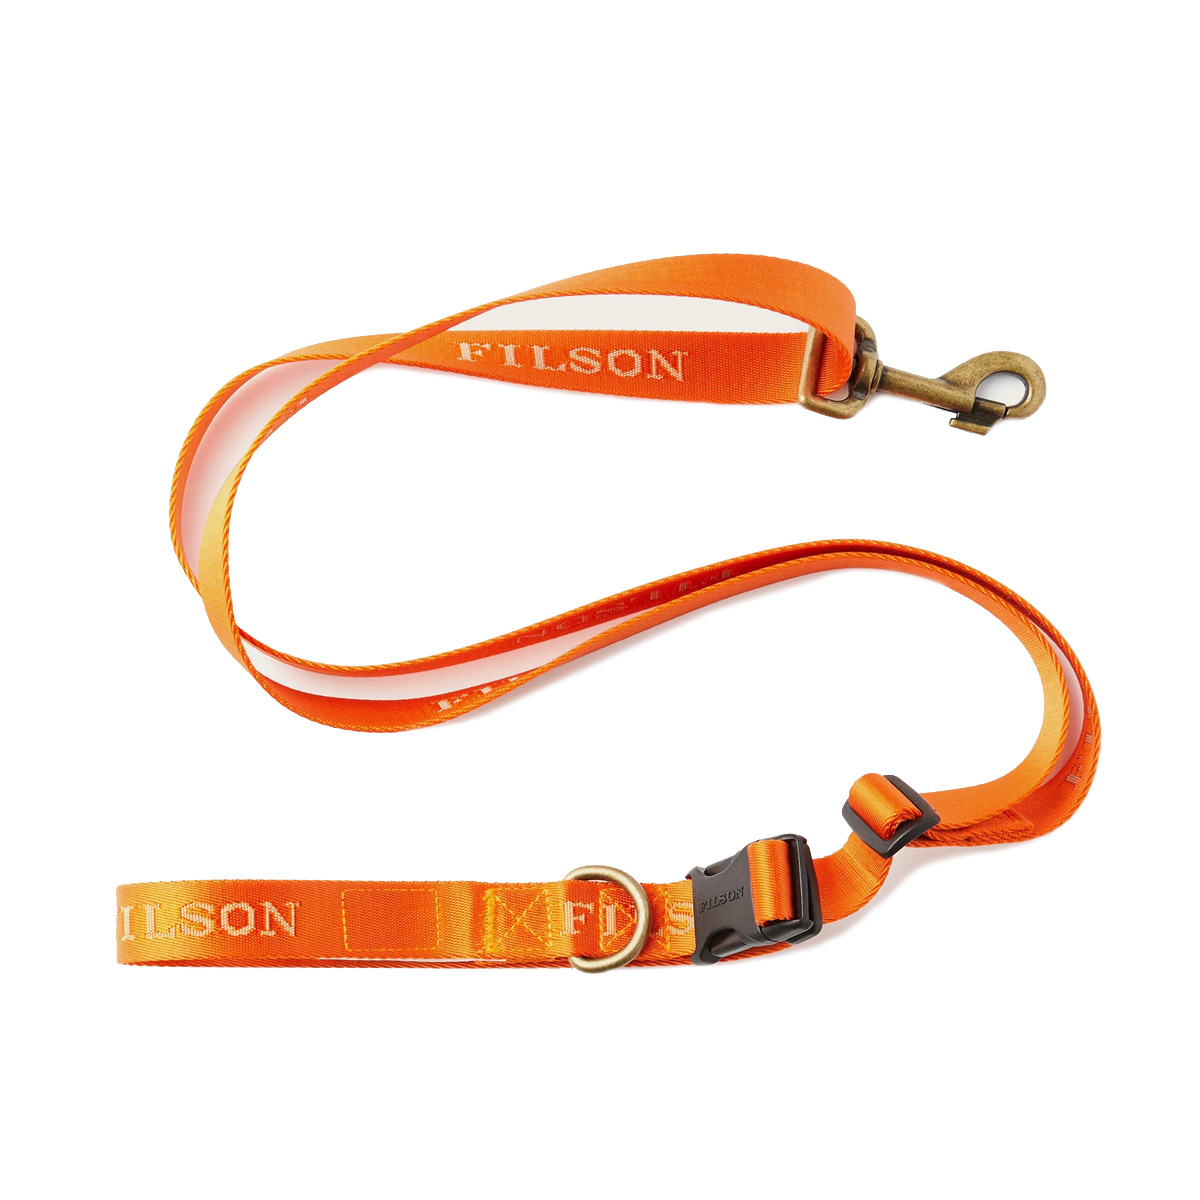 Filson Adjustable Nylon Leash 20218830-Flame, Strapazierfähige Hundeleine aus Nylon für das Training oder den Spaziergang mit Ihrem Hund